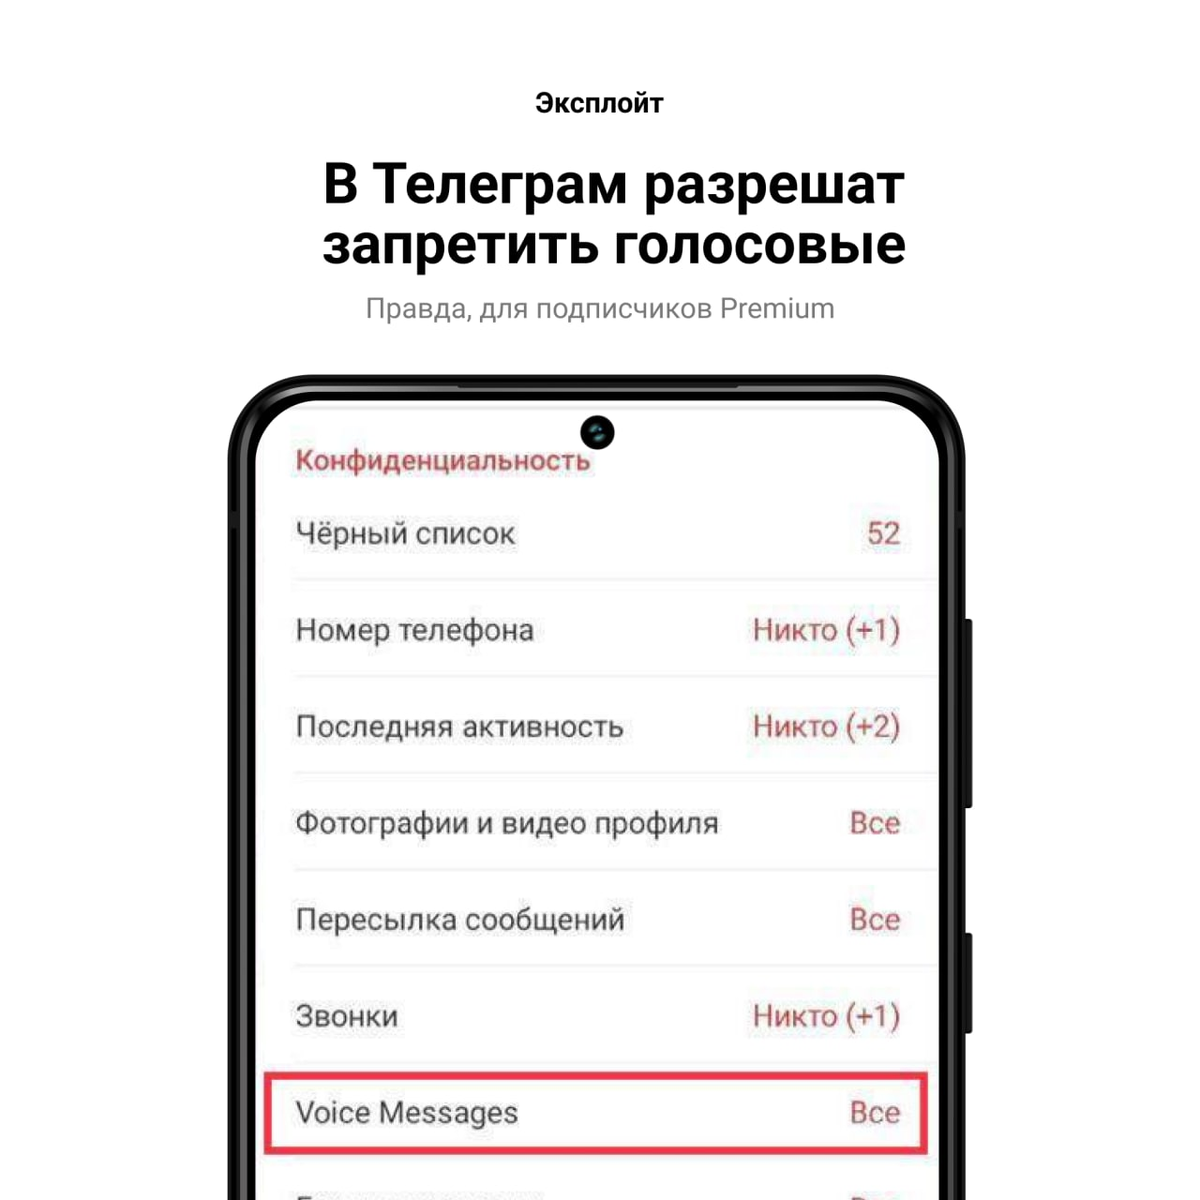 Как перевести голосовое сообщение в телеграмме с английского на русский фото 75